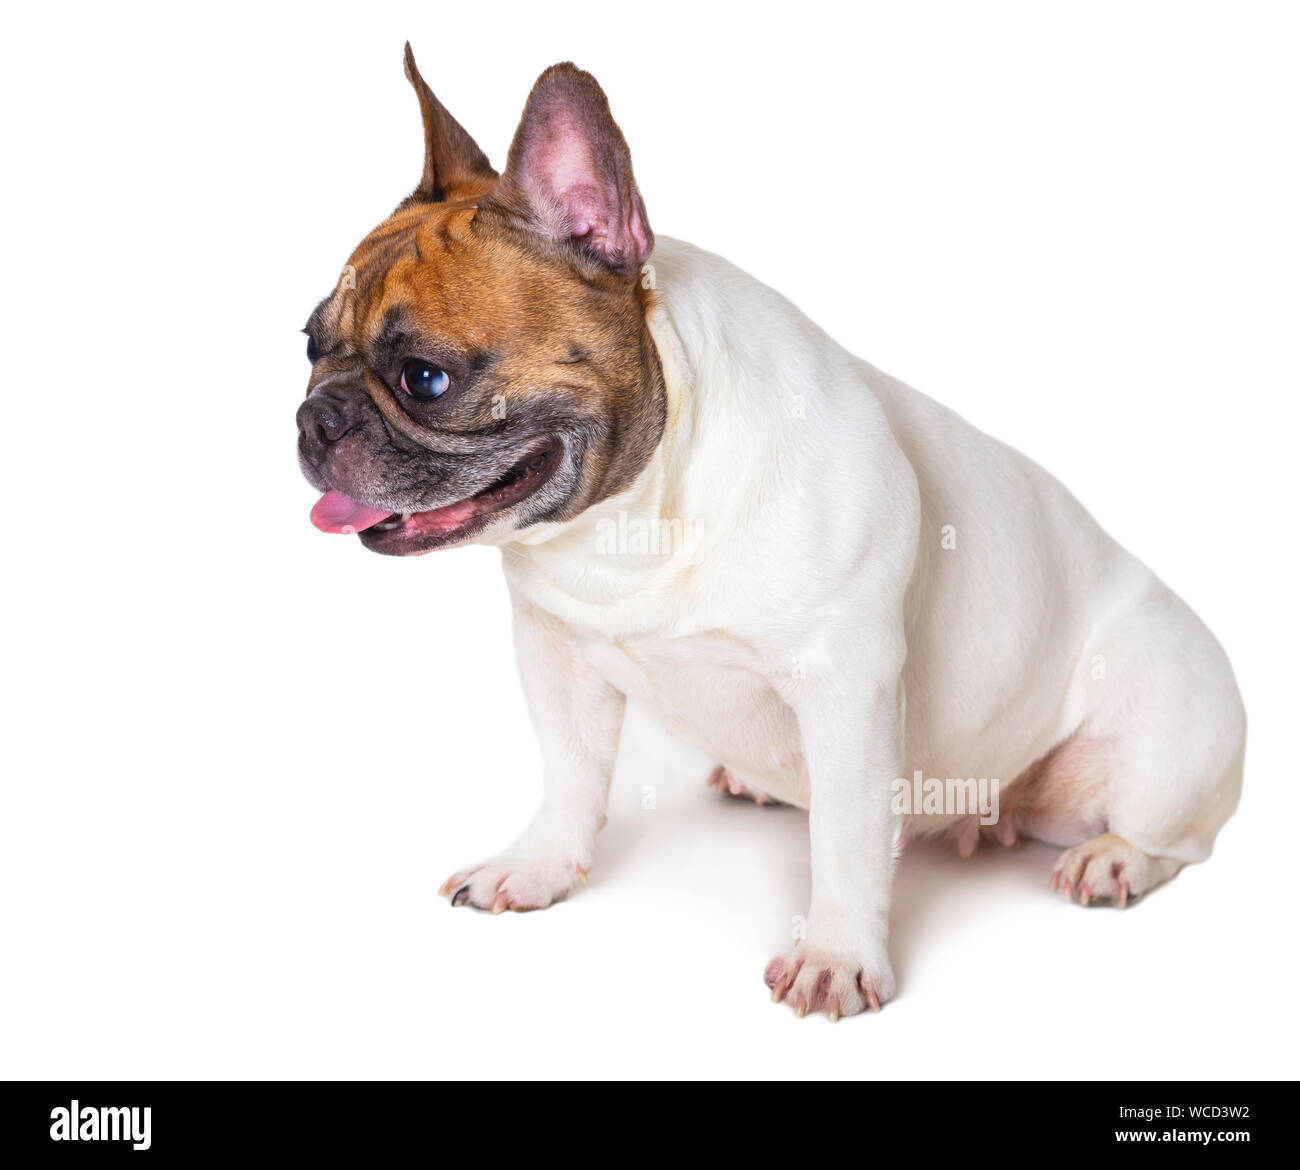 french bulldog breed dog on white isolated background Stock Photo